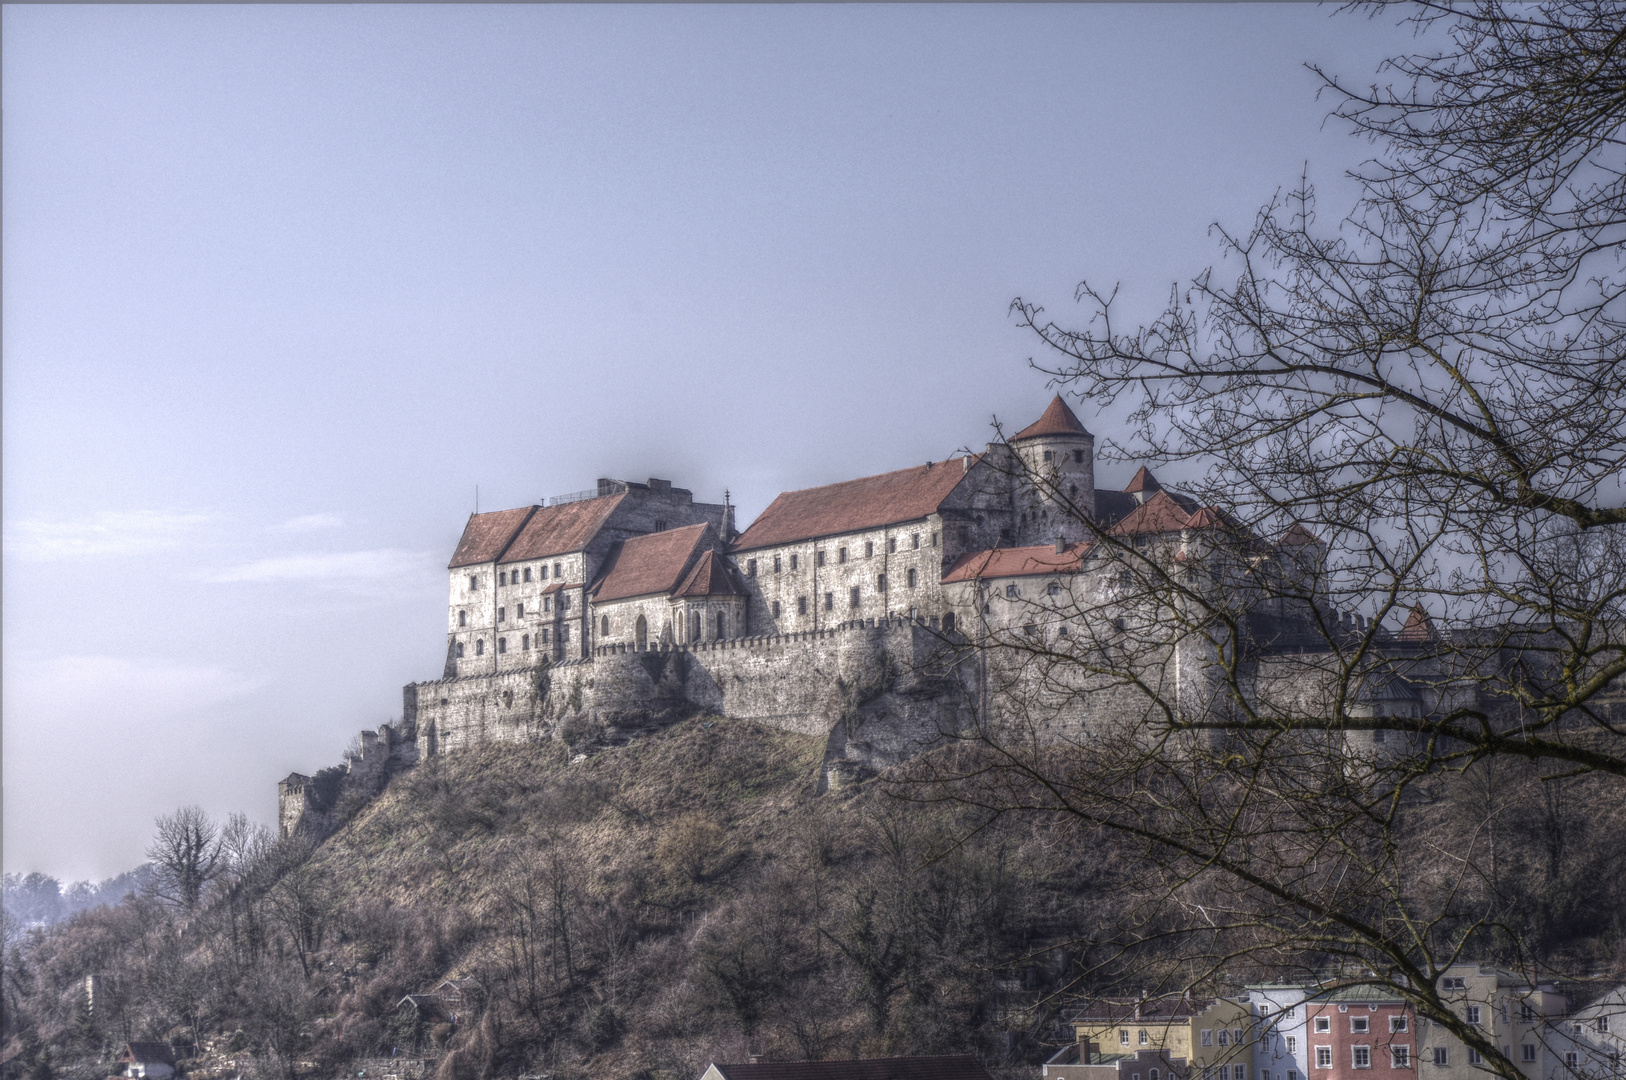 Burg von Burghausen wie im Märchen